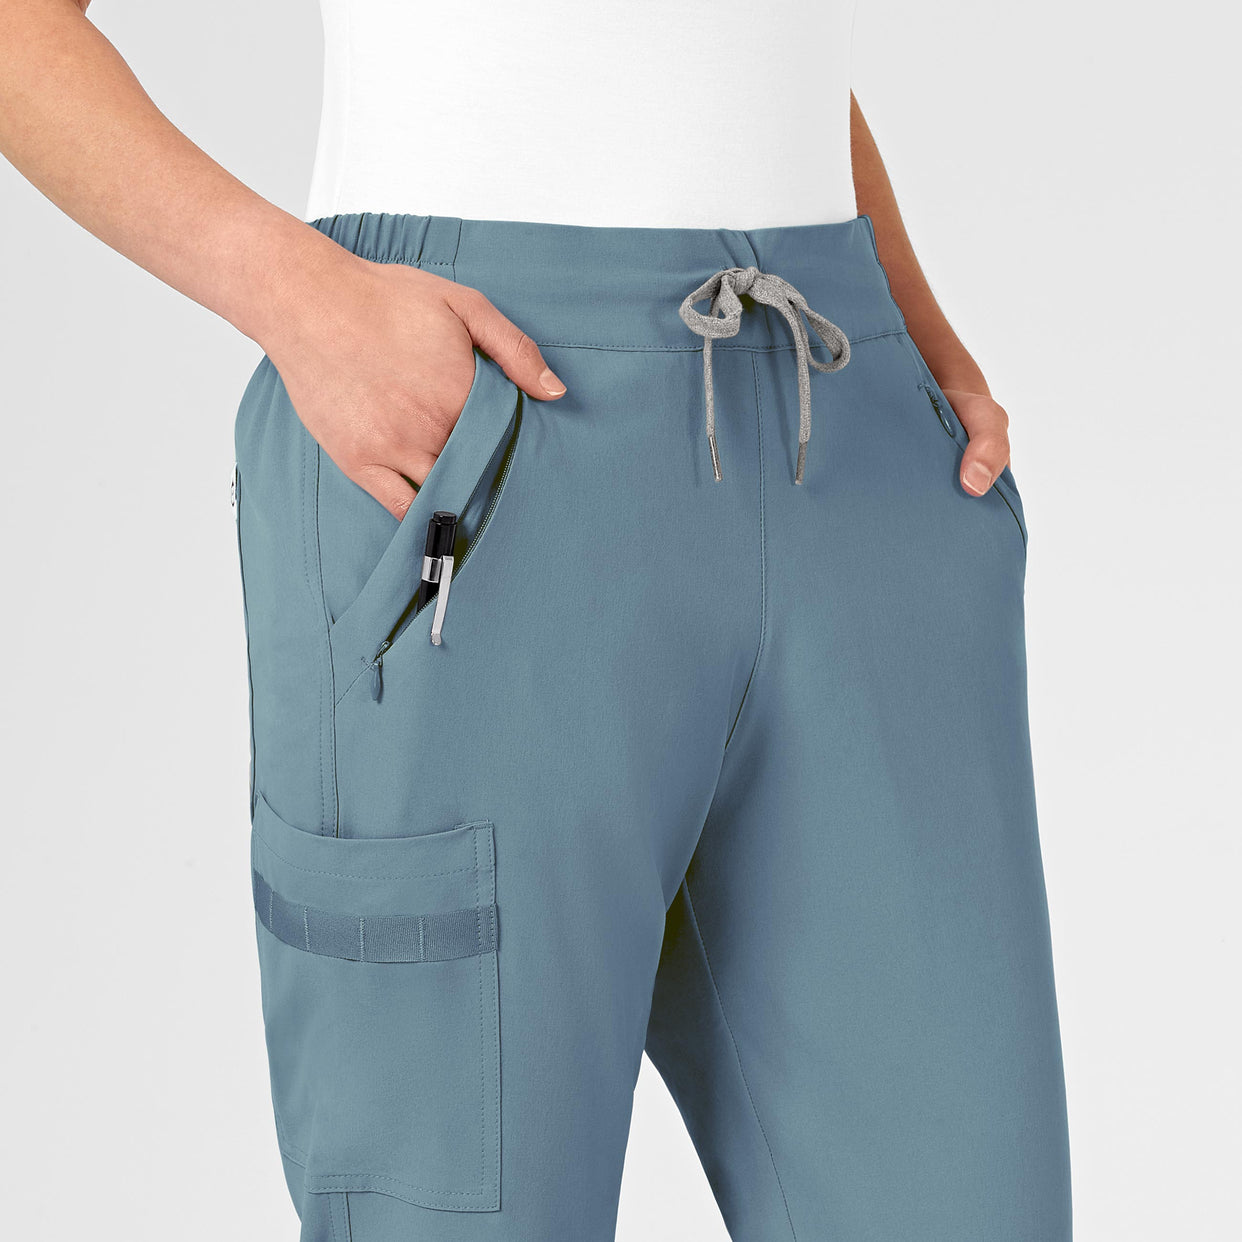 RENEW Women's Jogger Scrub Pant Elemental Blue side detail 1